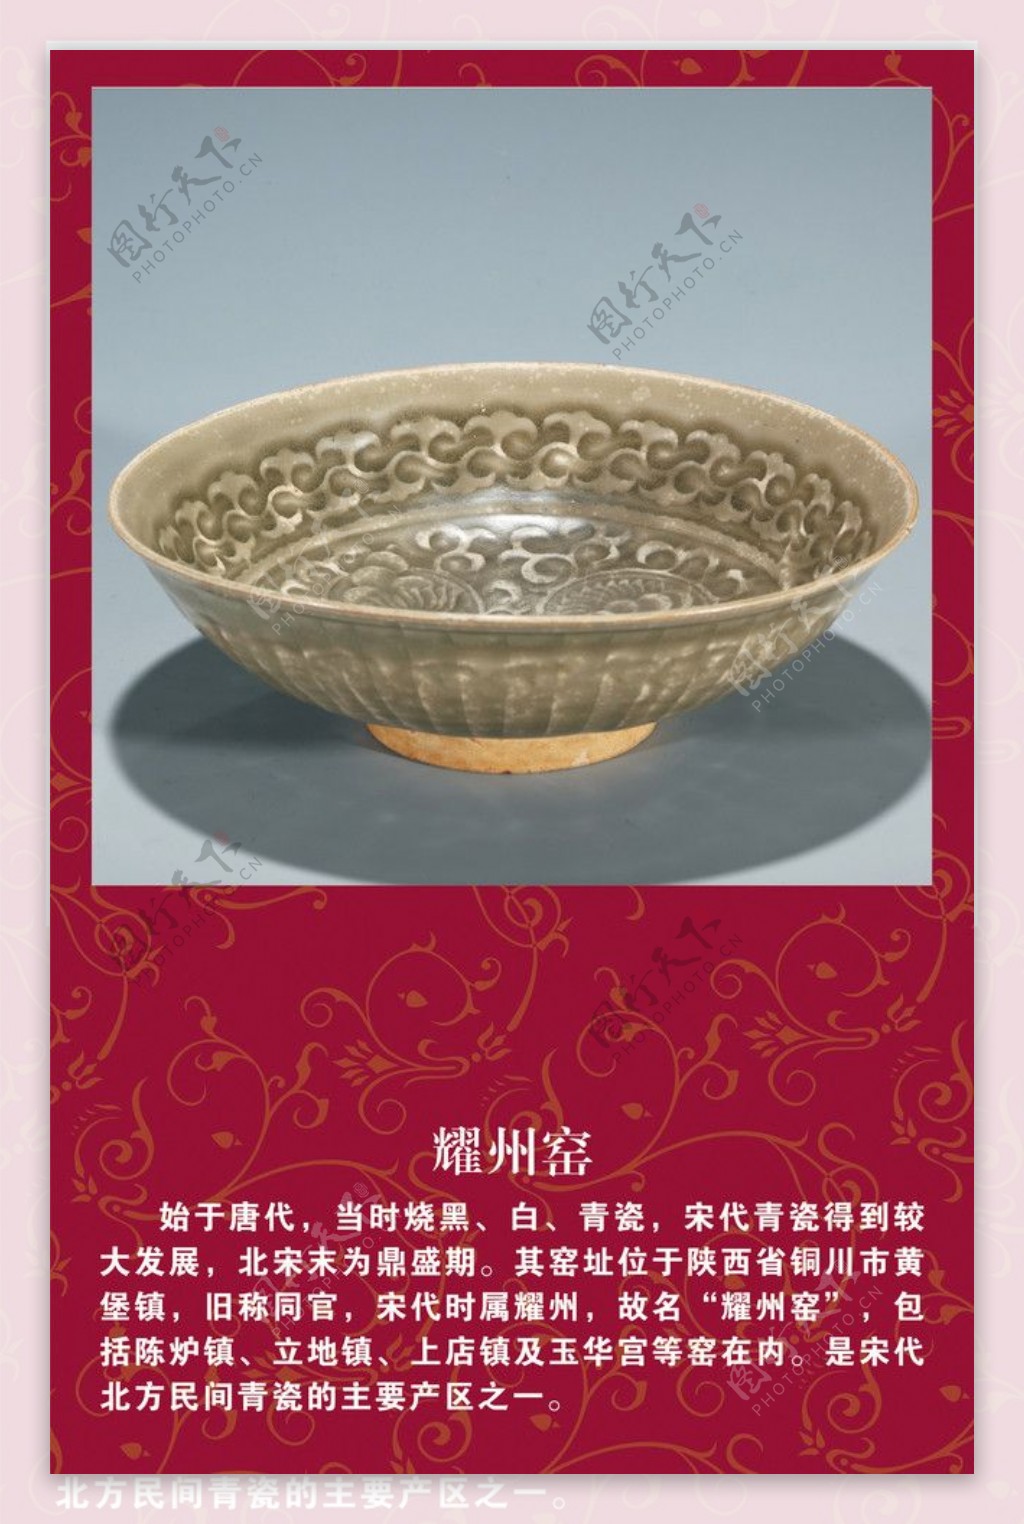 瓷器耀州窑图片